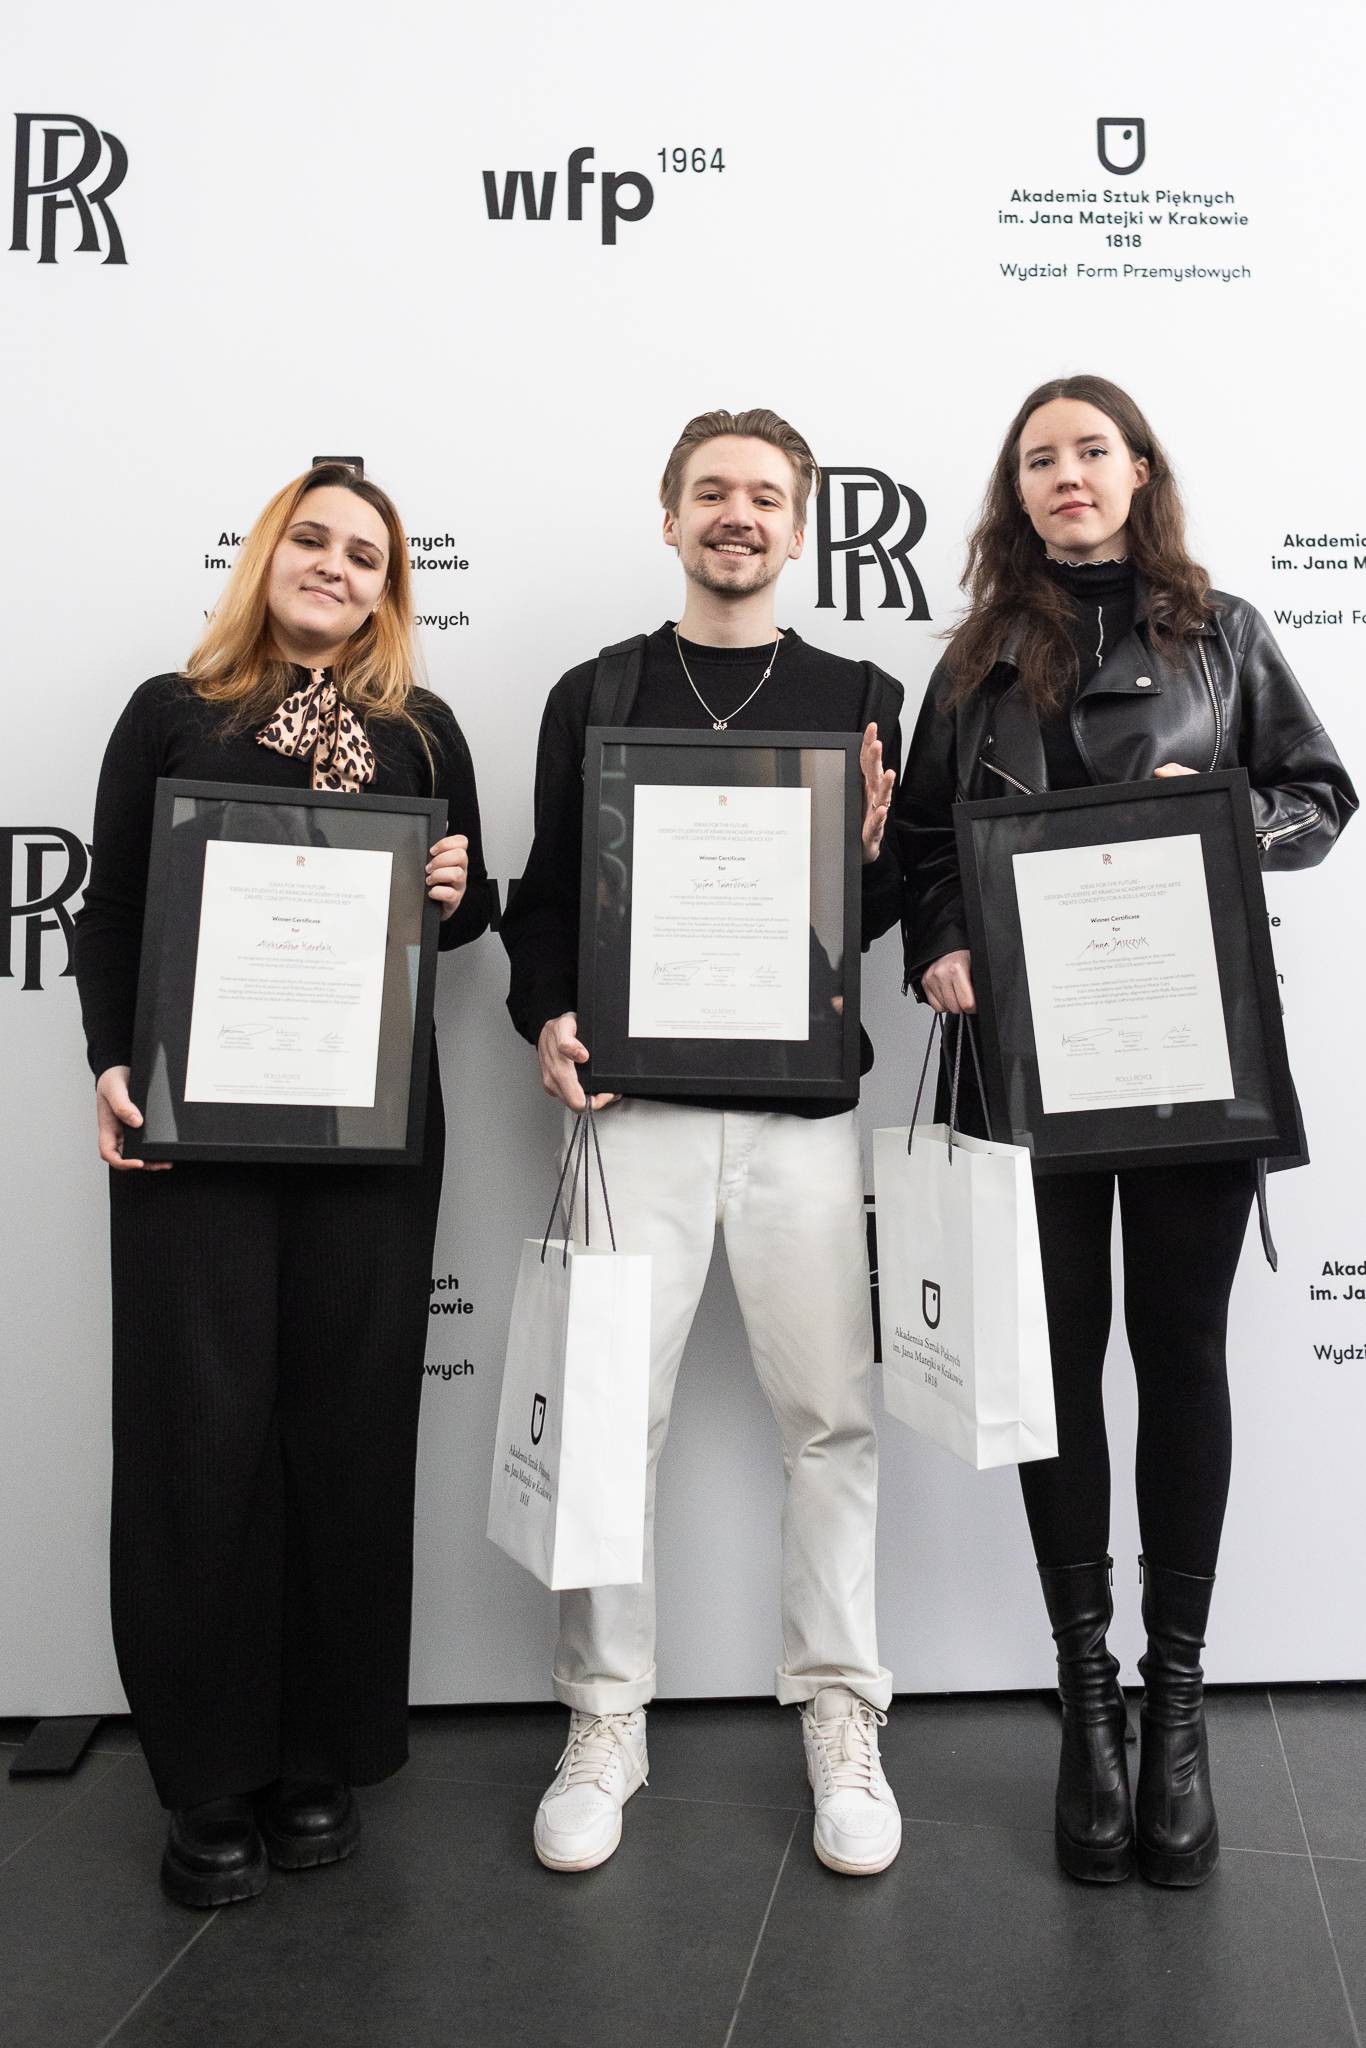 Aleksandra Karolak, Tycjan Twardowski i Anna Jaszczyk - zwycięzcy konkursu Rolls-Royce i ASP w Krakowie